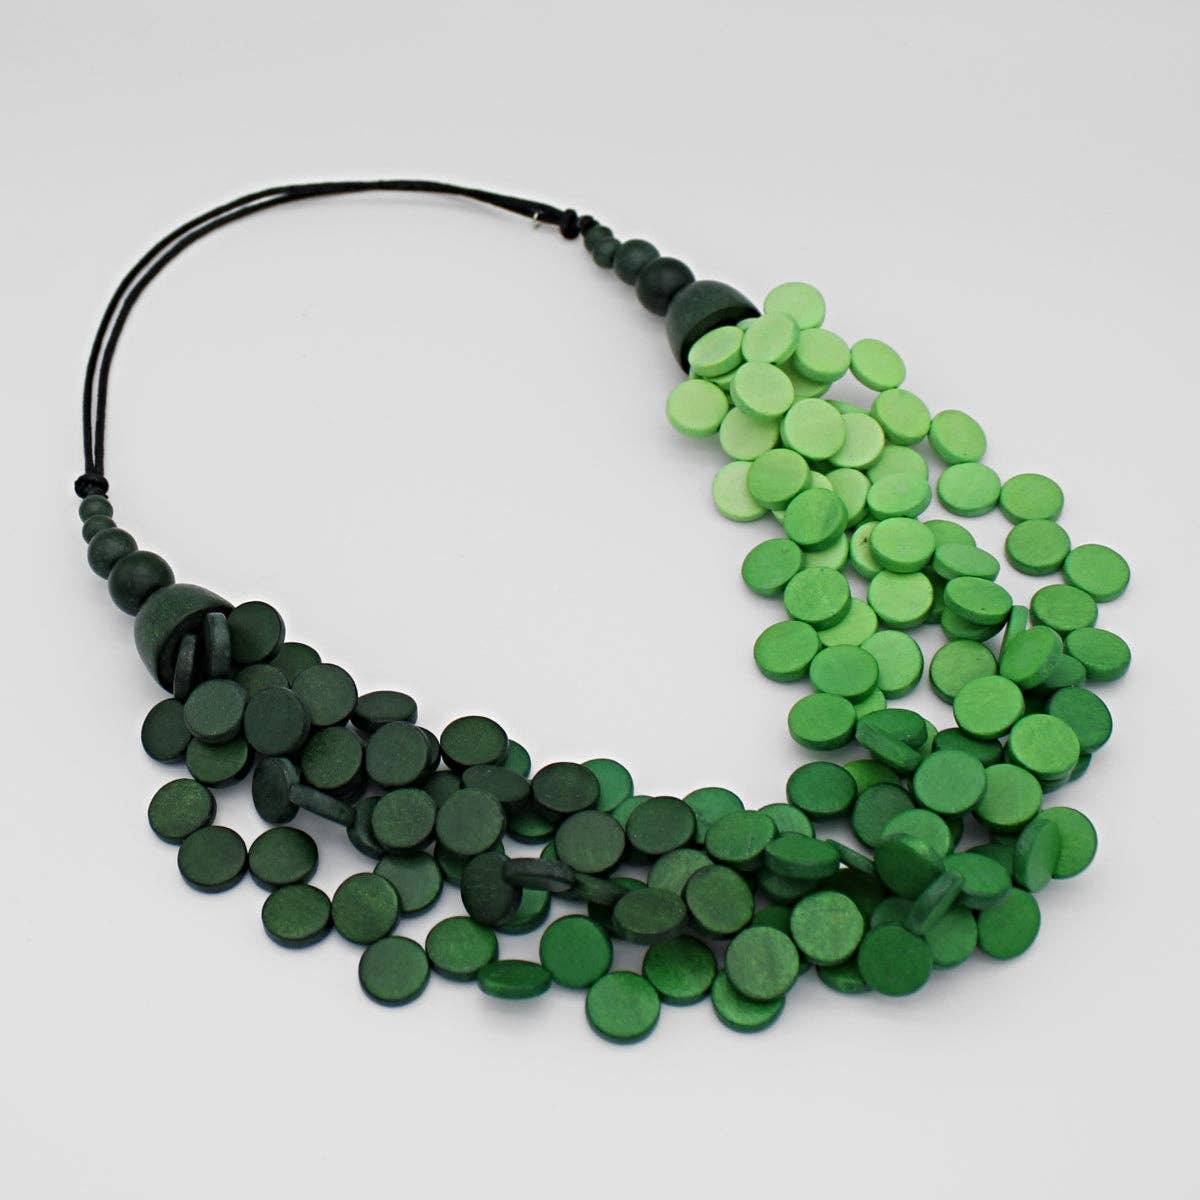 Sylca Designs - Ombre Green Gillian Necklace